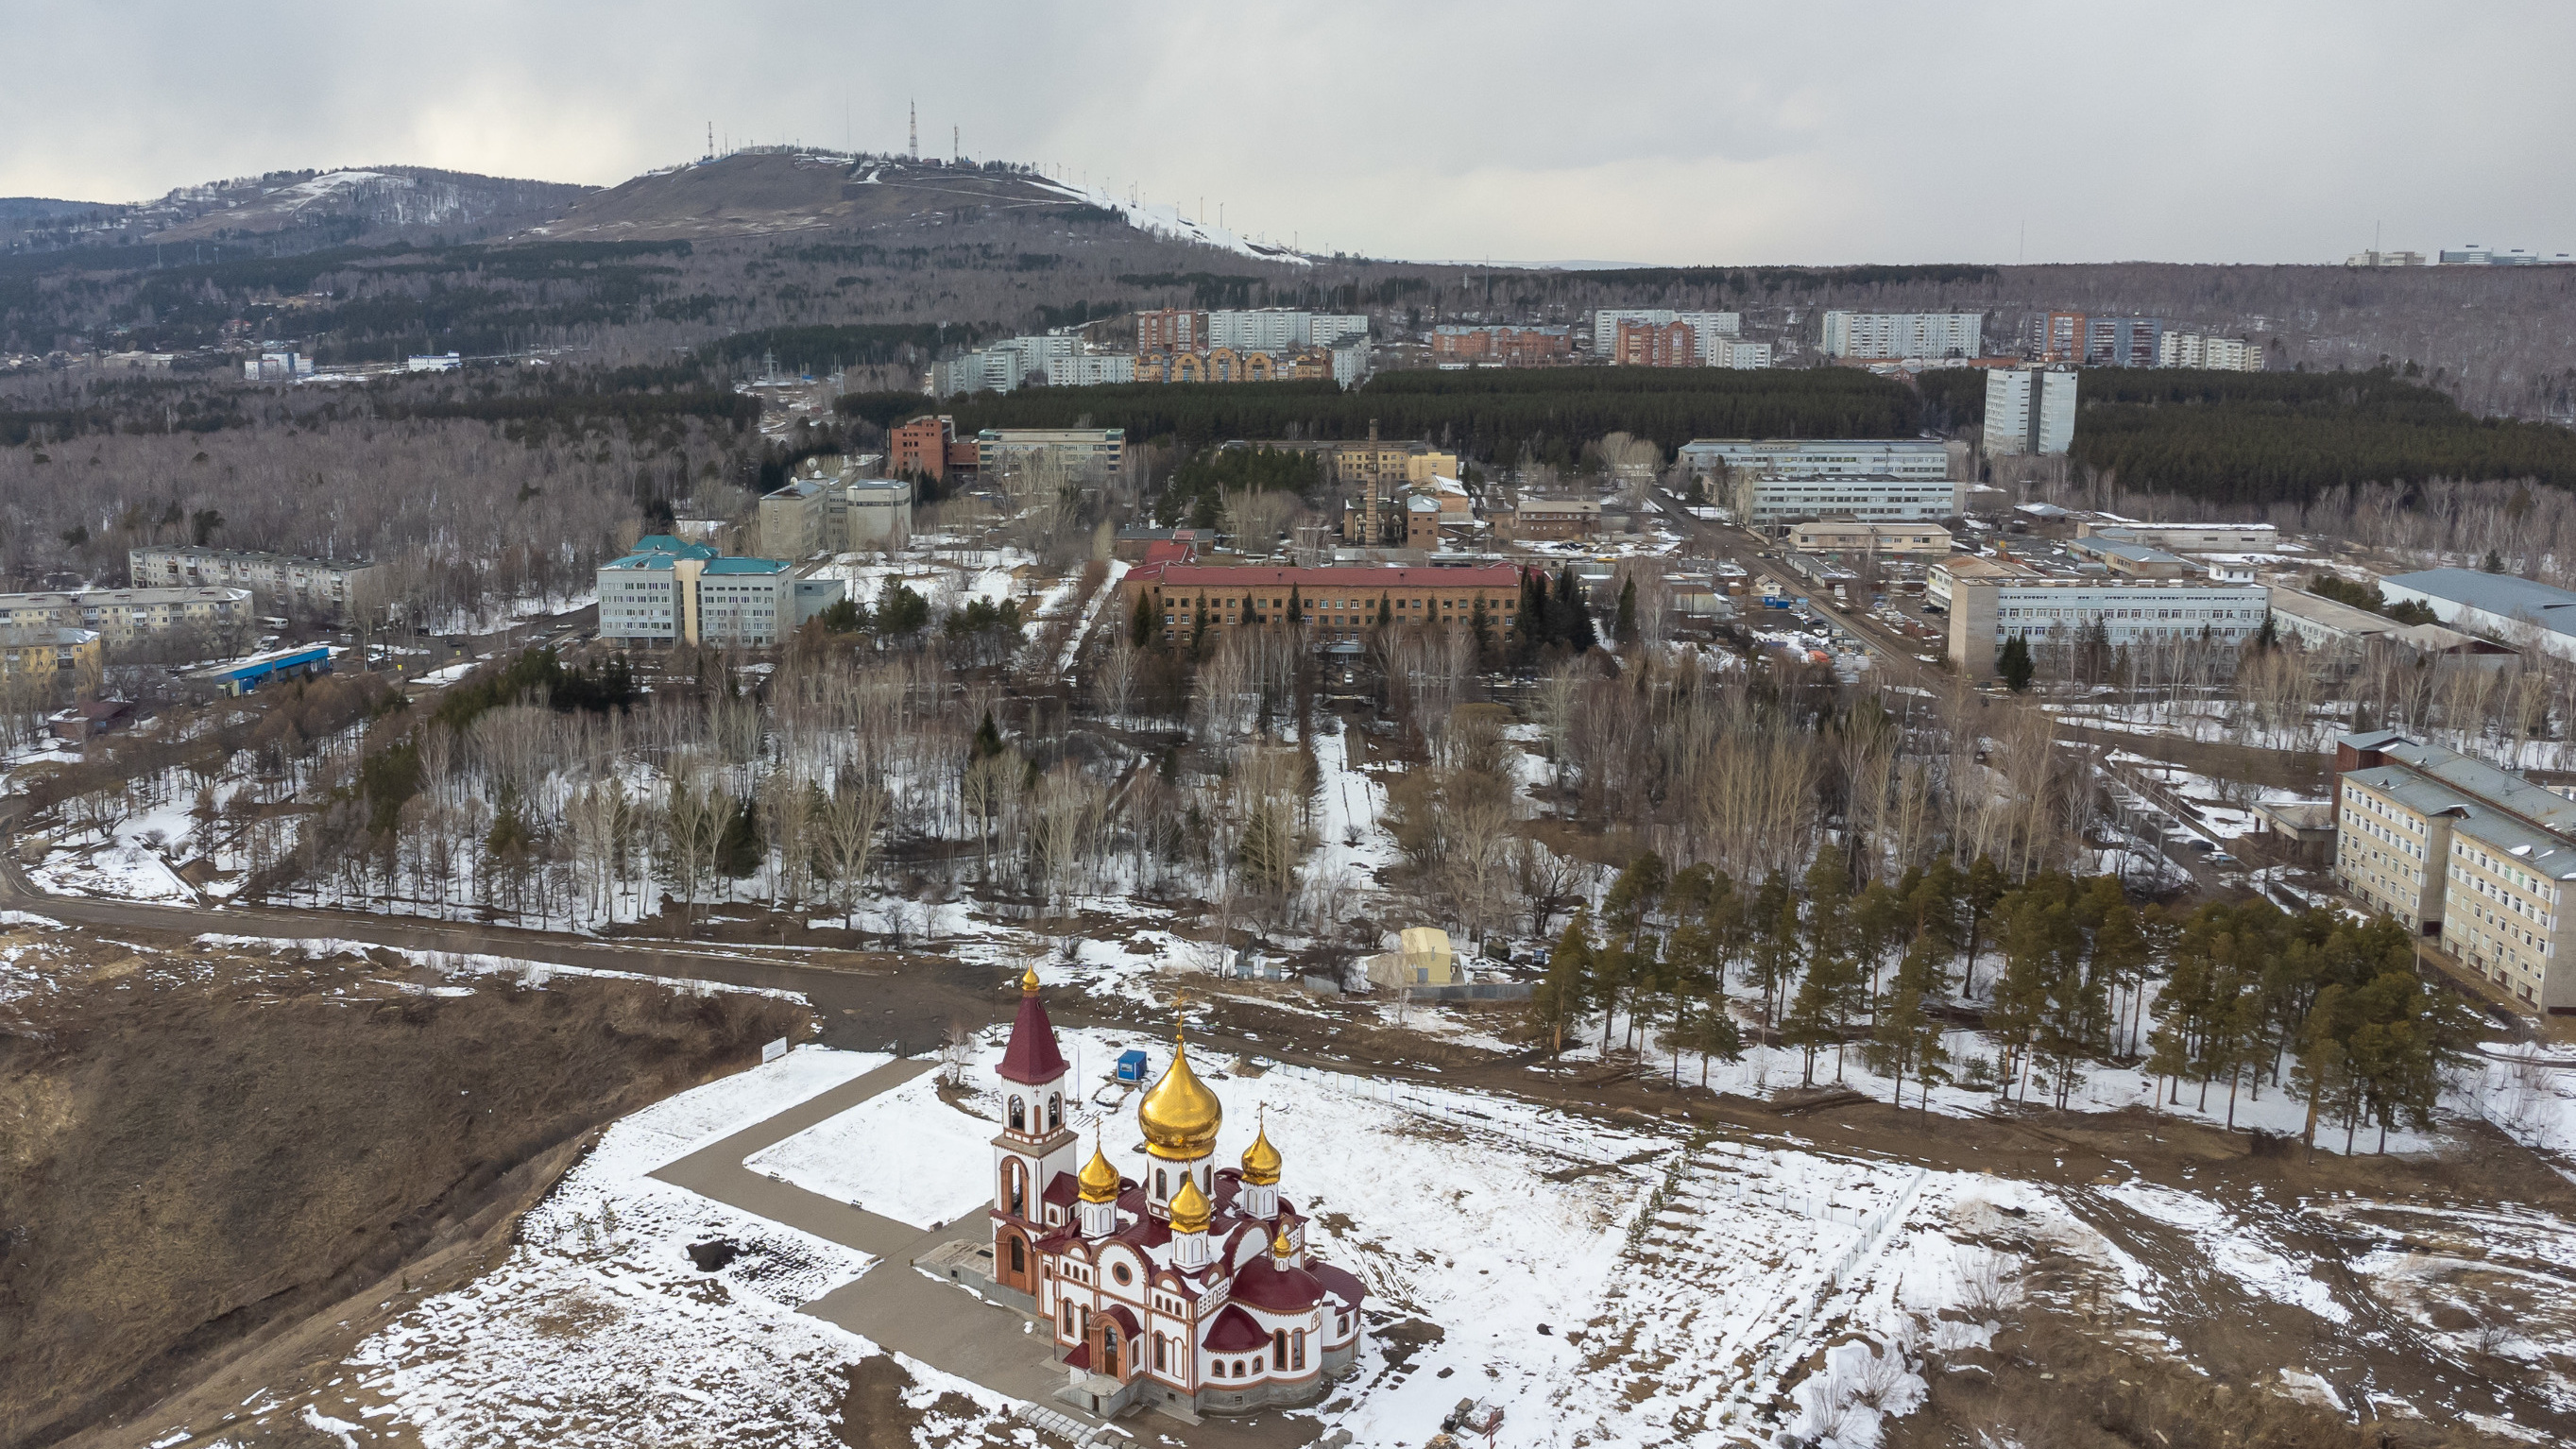 «Краснокнижные деревья выдают за стихийную поросль»: как идет борьба за застройку дендрария в Красноярске